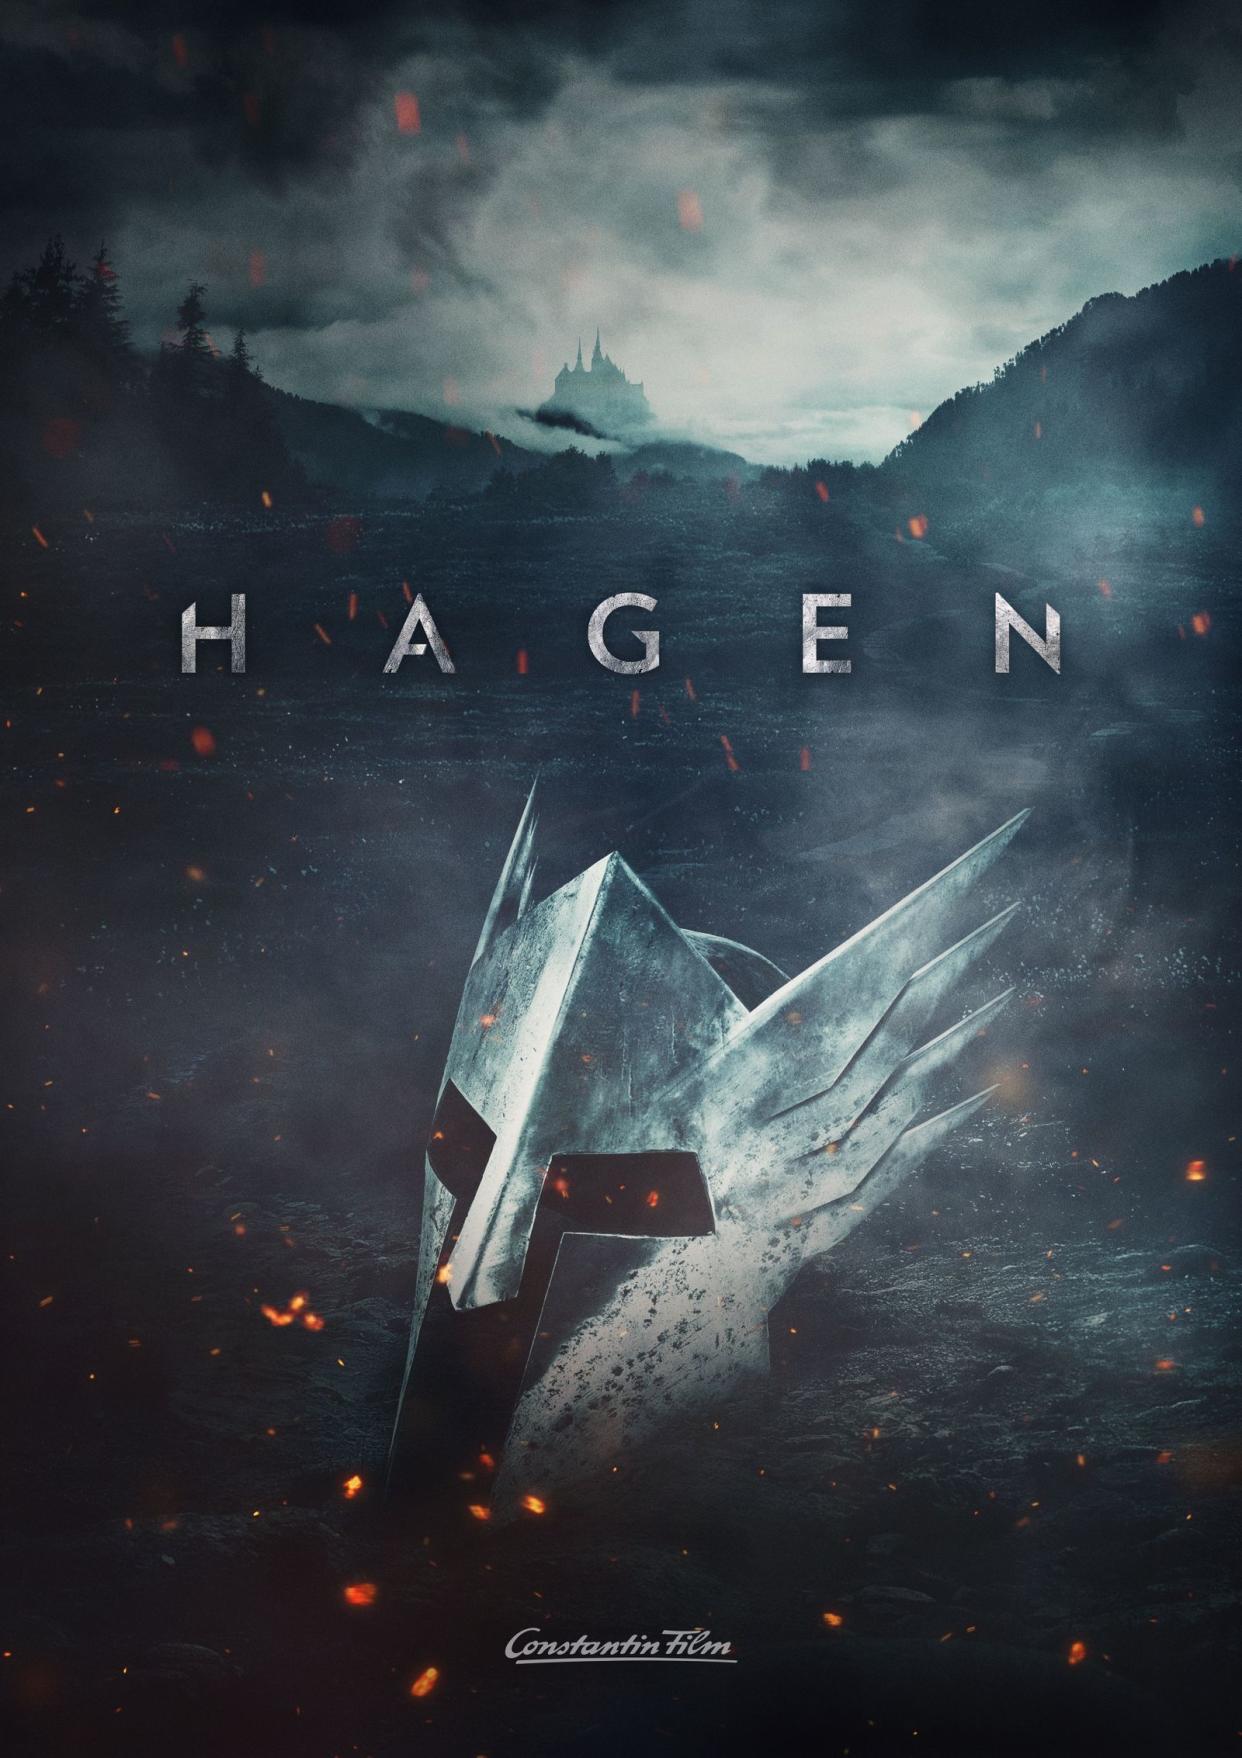 Die Dreharbeiten zu dem spektakulären Fantasy-Epos starten: "HAGEN" soll als eine Art Neuauflage der Nibelungensage begeistern, überraschen und schockieren.  (Bild: Constantin Film)